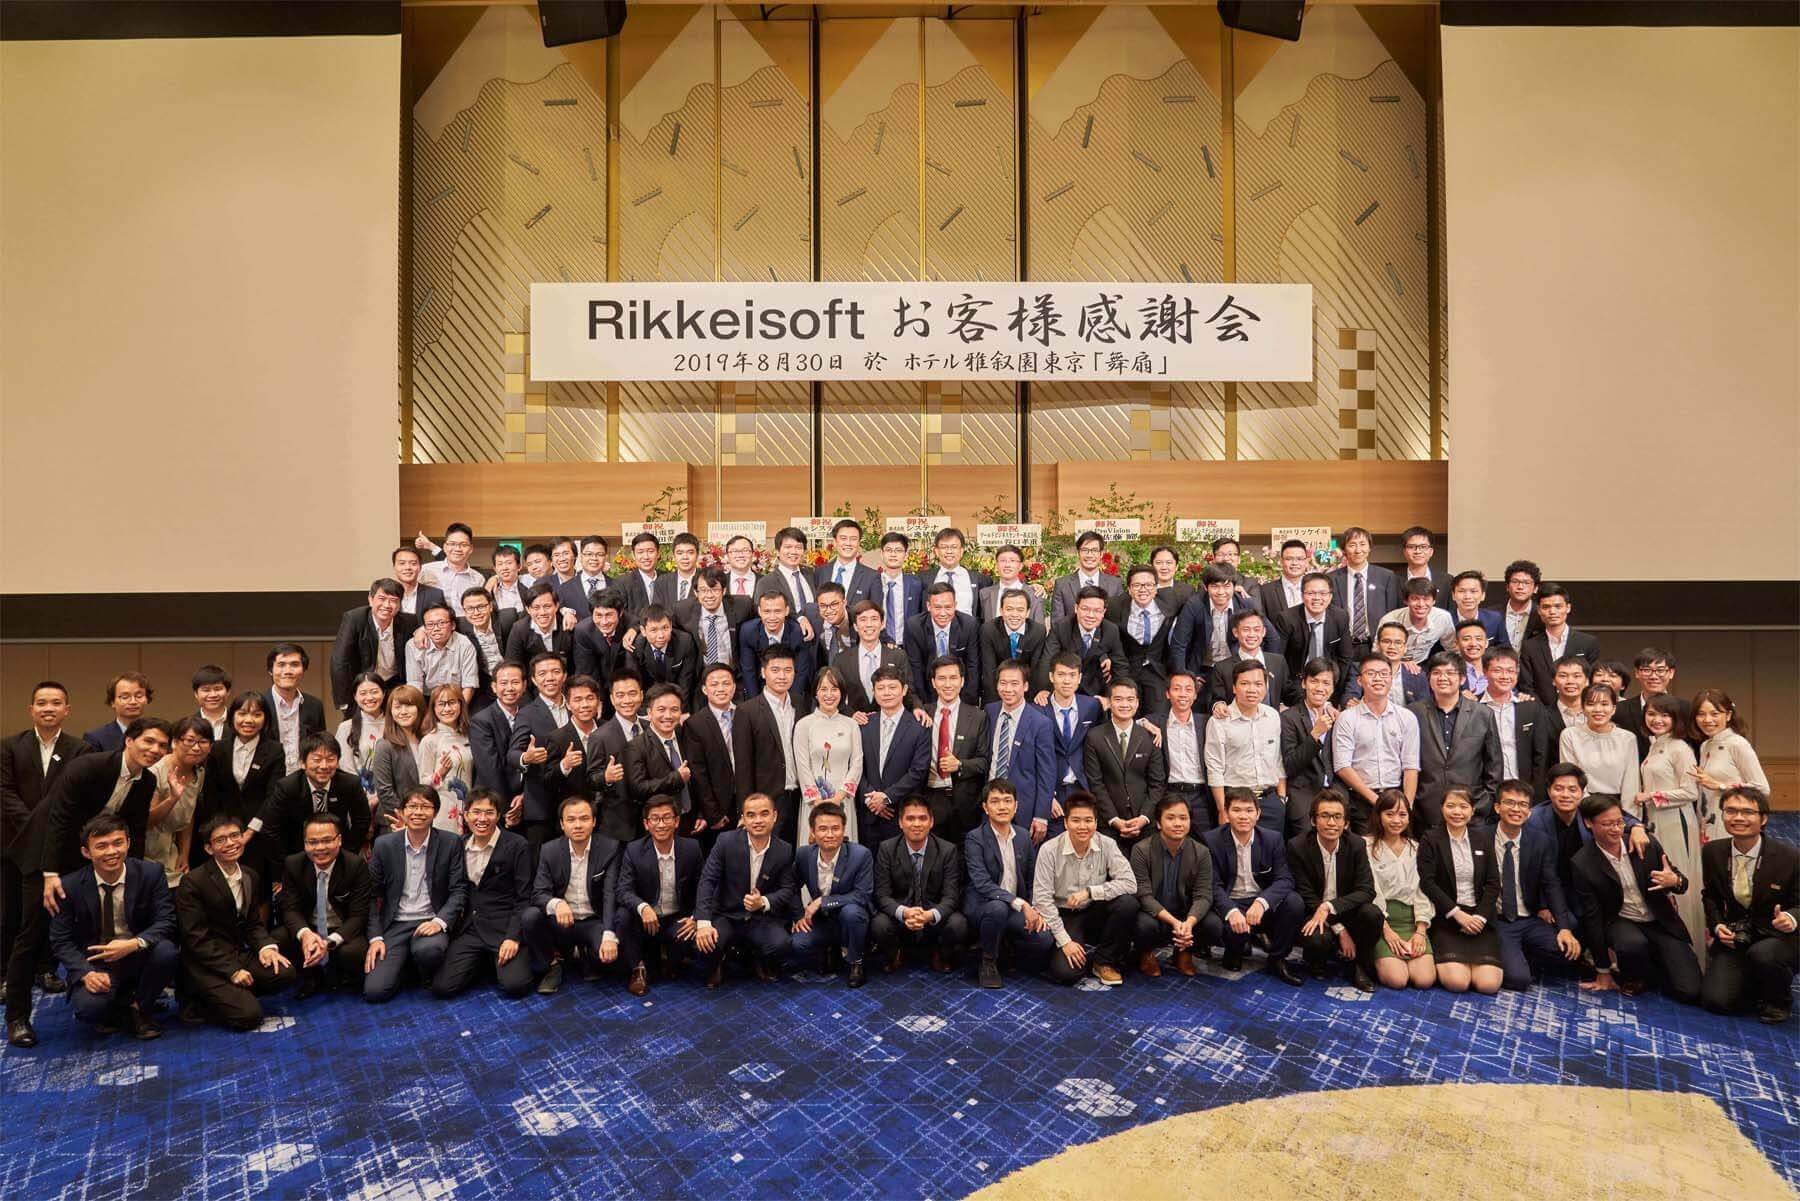 Để giúp doanh nghiệp chuyển đổi số, Rikkeisoft cũng phải tạo ra những nhóm nhân sự mới không chỉ có kỹ năng công nghệ | Ảnh: Rikkeisoft